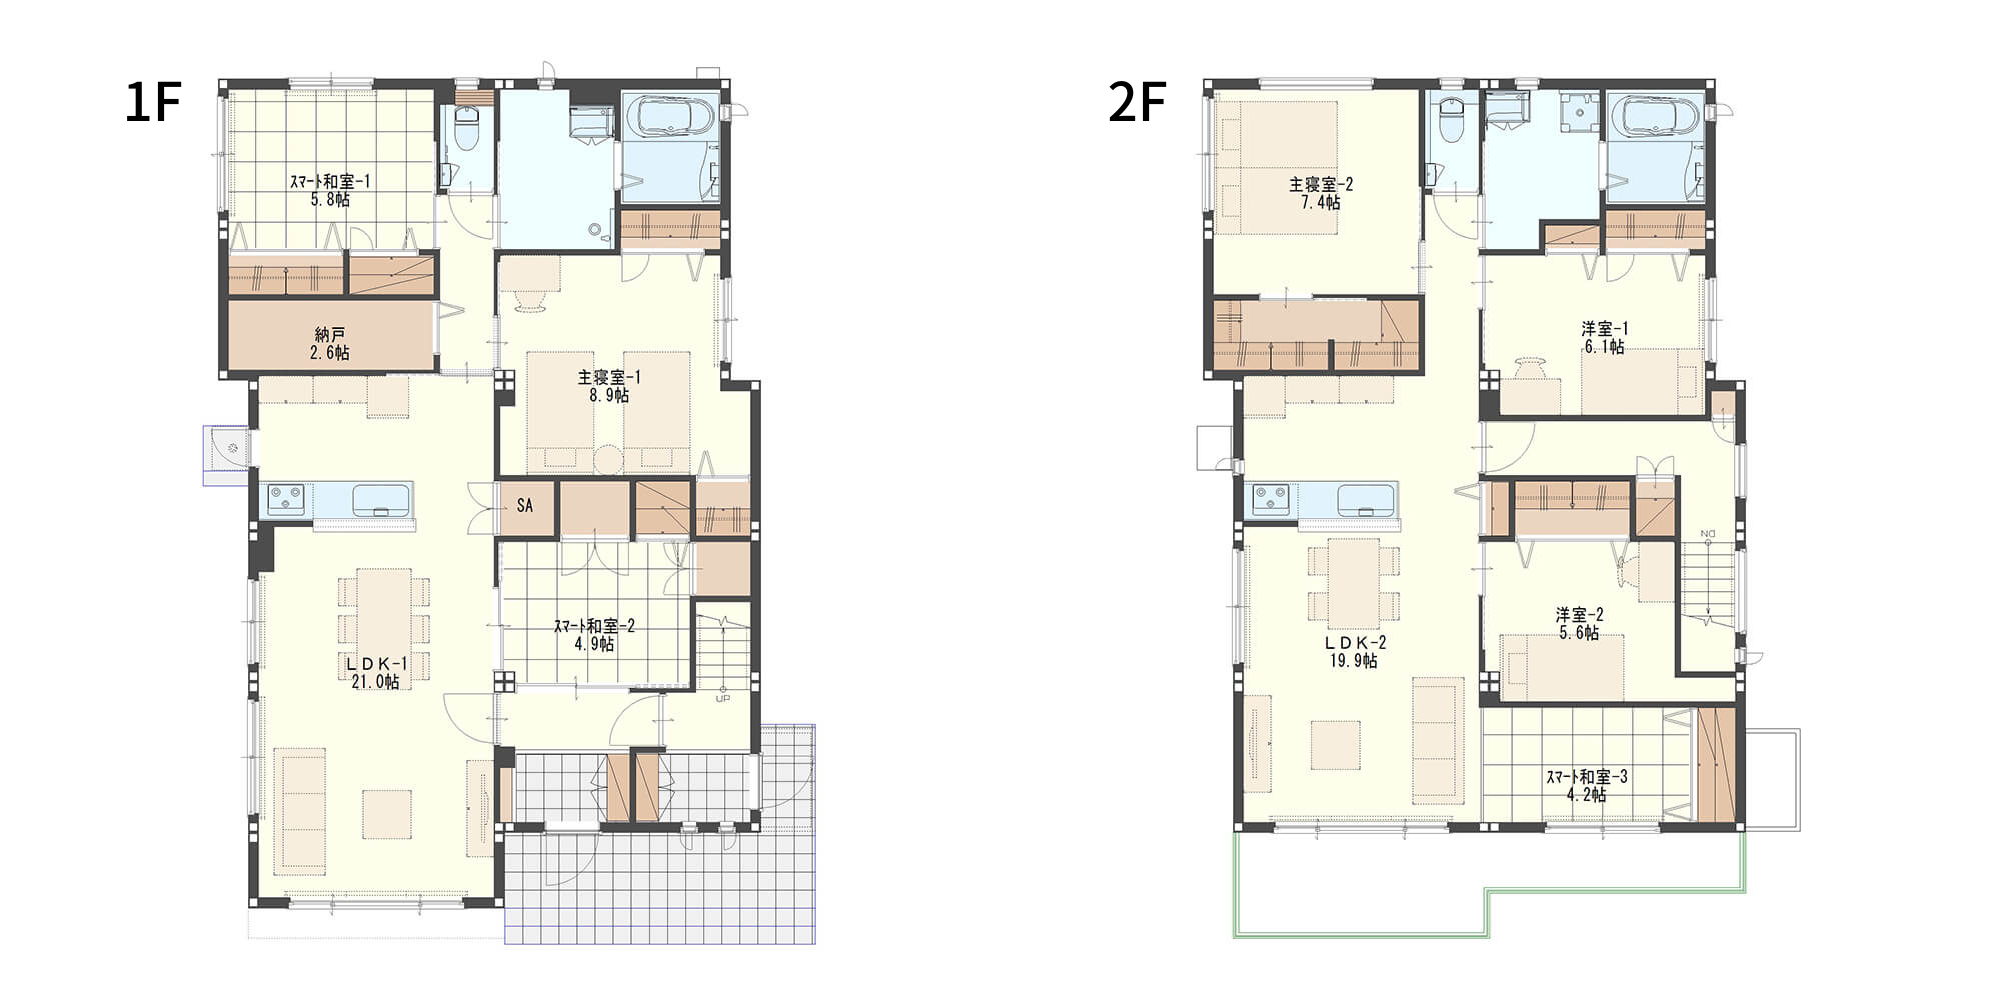 【63.5坪】内扉で行き来しやすい完全分離タイプの二世帯住宅の間取り図